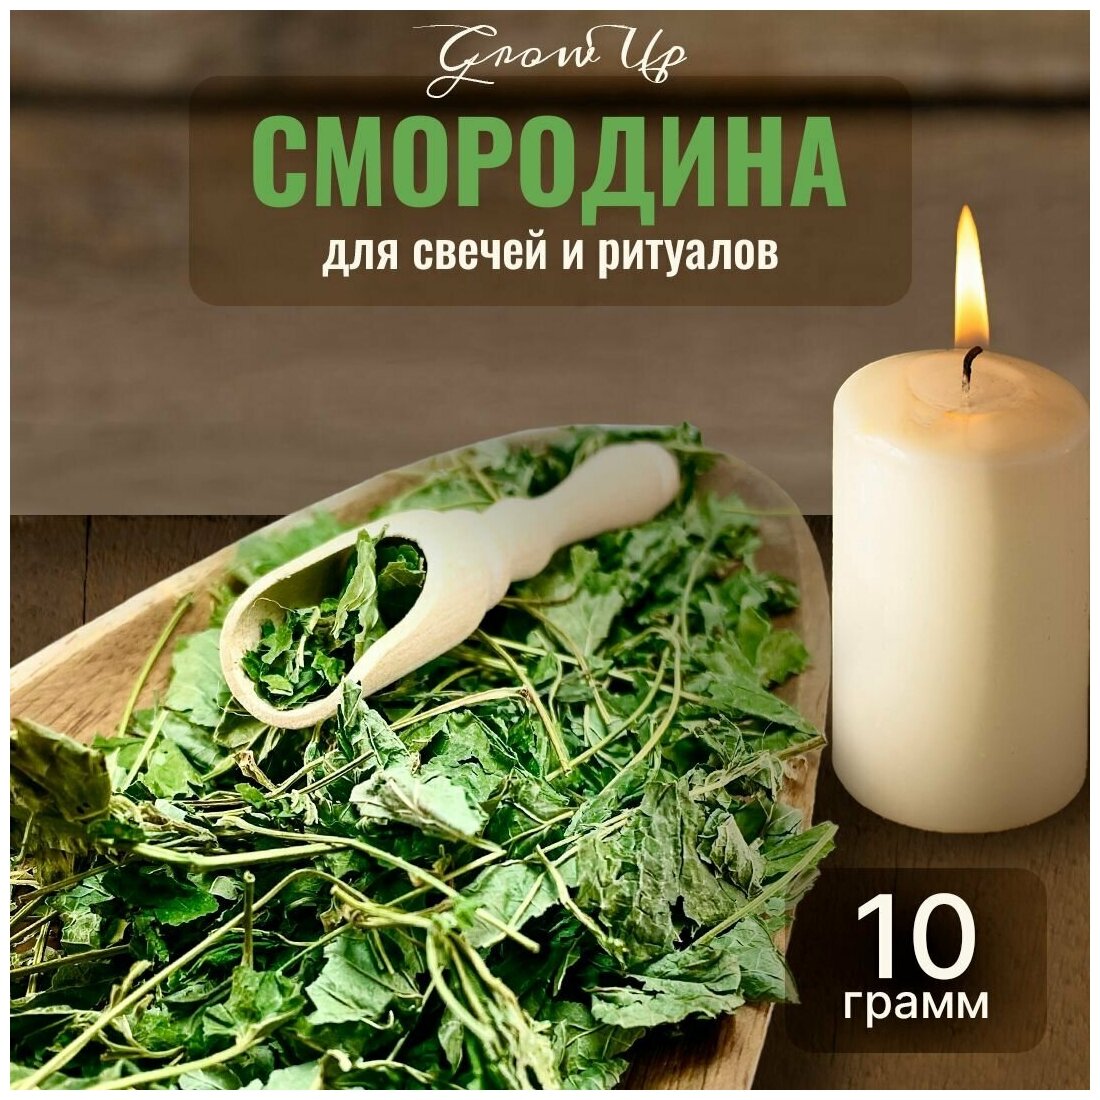 Сухая трава Смородина (лист) для свечей и ритуалов 10 гр